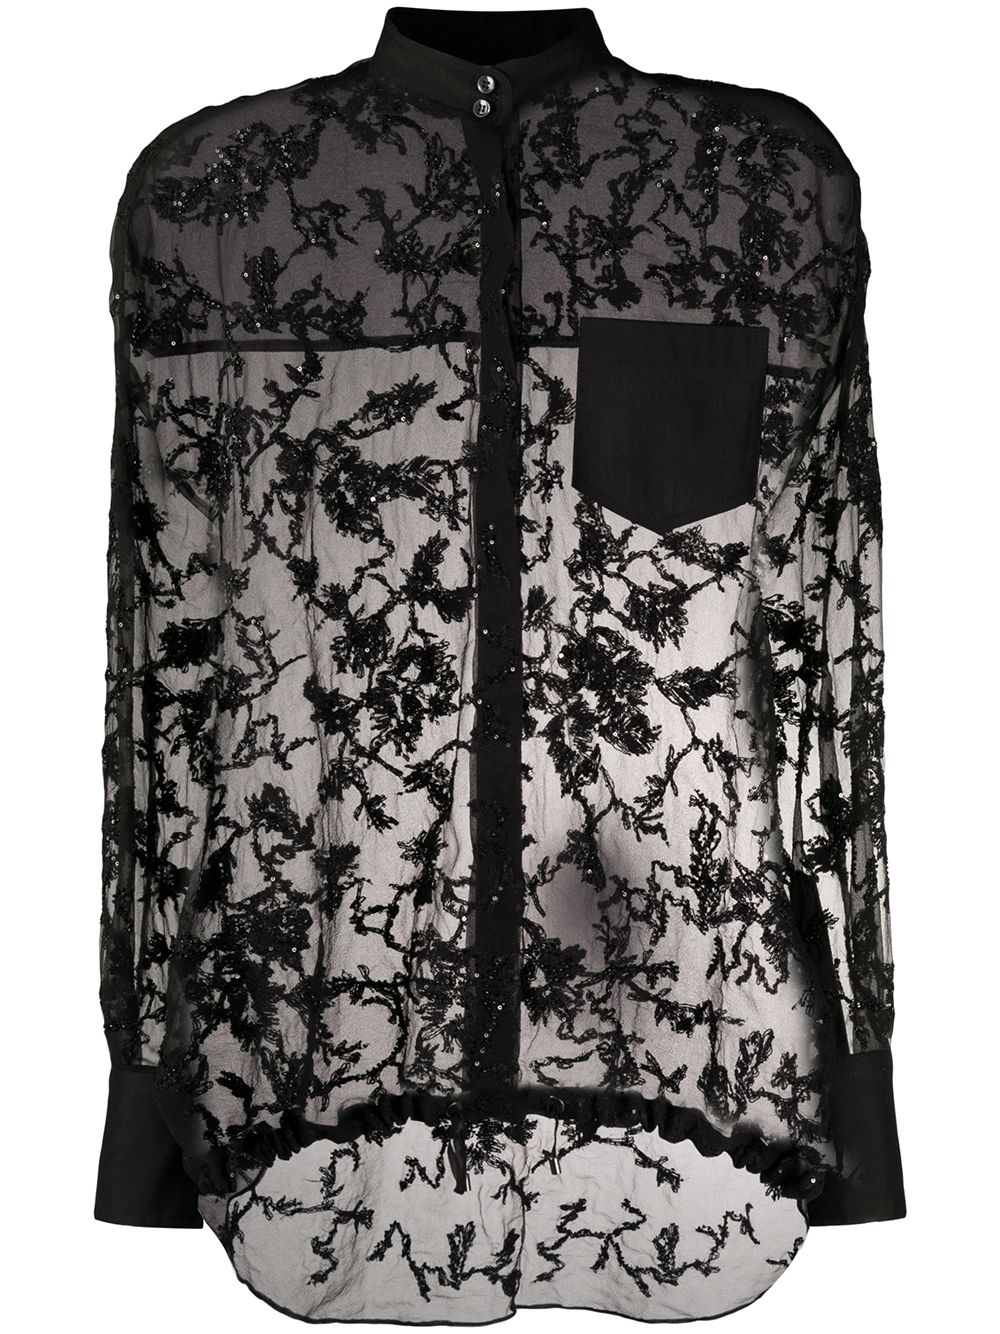 фото Brunello cucinelli прозрачная блузка с вышивкой бисером